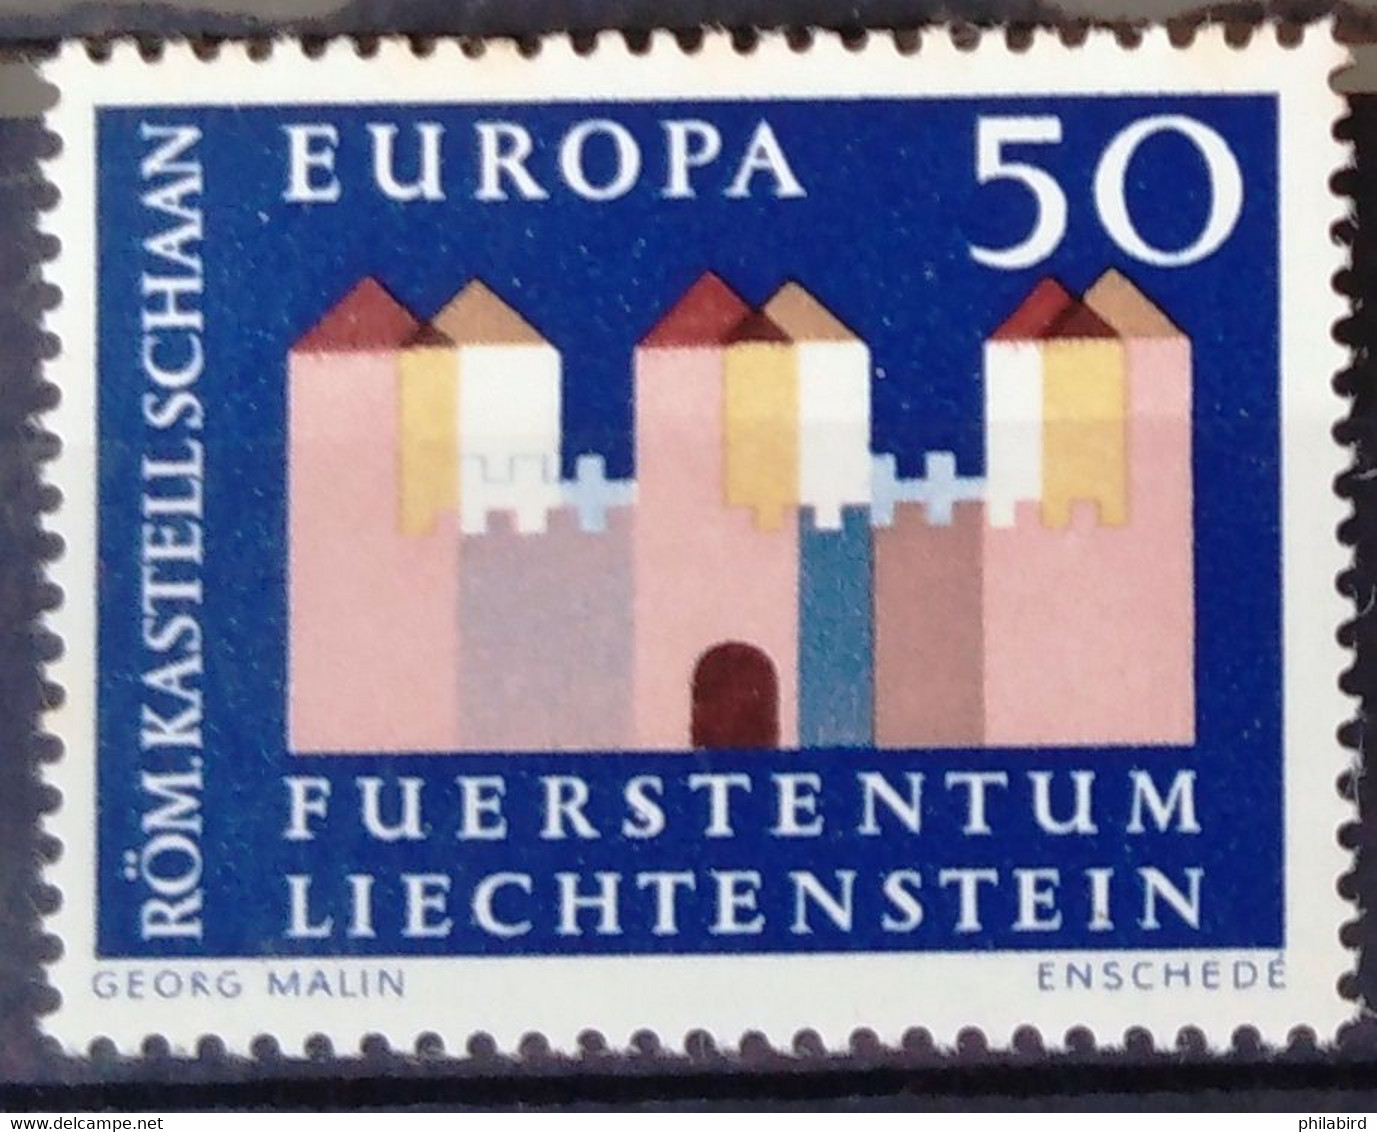 EUROPA 1964 - LIECHTENSTEIN                N° 388                        NEUF** - 1964